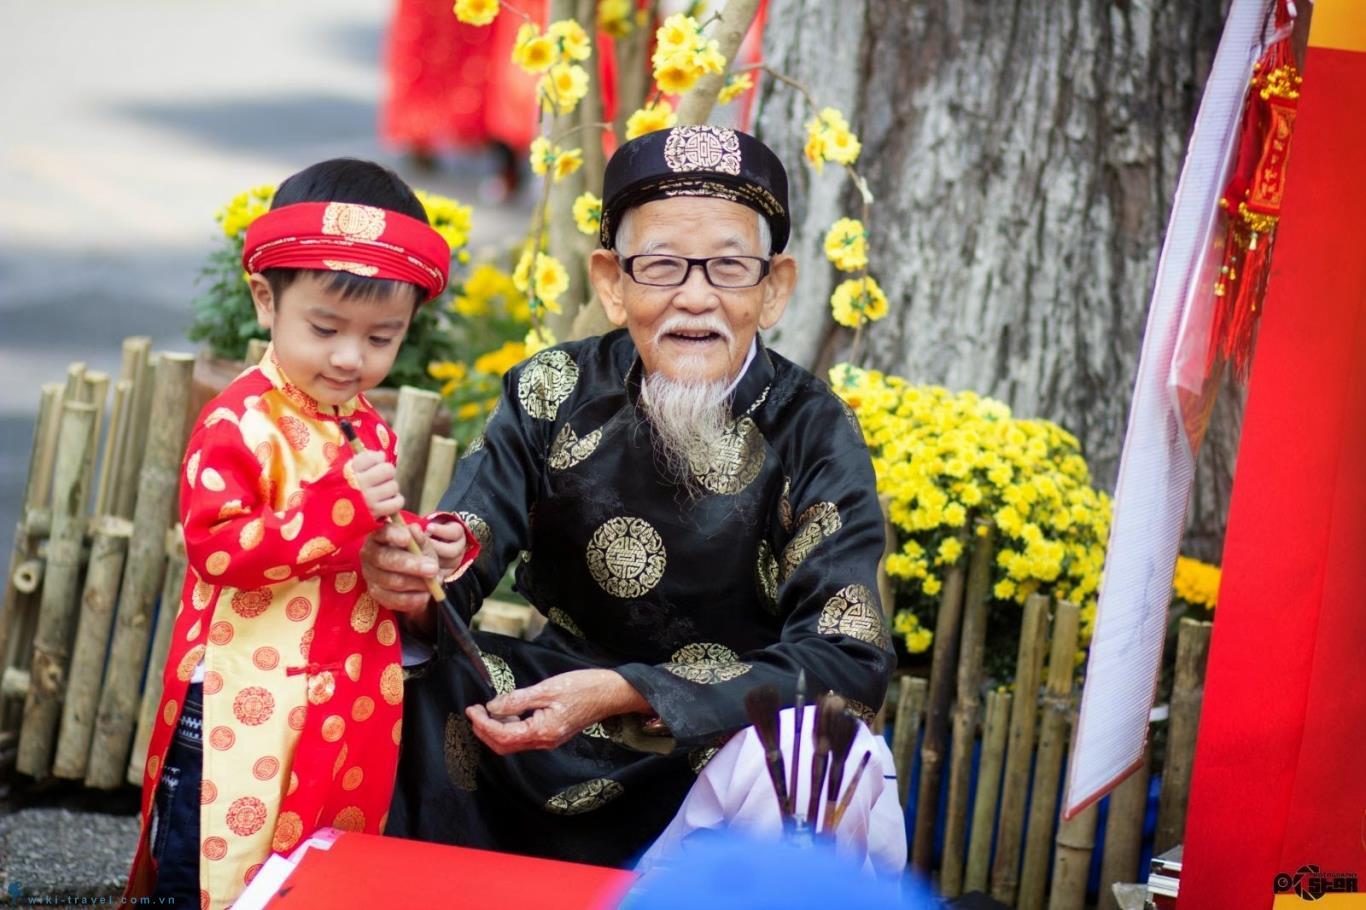 Nét đẹp Tết không chỉ đến từ những cuộc gặp gỡ, tặng quà mà còn đến từ những trang phục truyền thống và những trang trí đầy sáng tạo. Hãy cùng xem những hình ảnh để chiêm ngưỡng vẻ đẹp và sự quyến rũ của Tết Việt Nam.